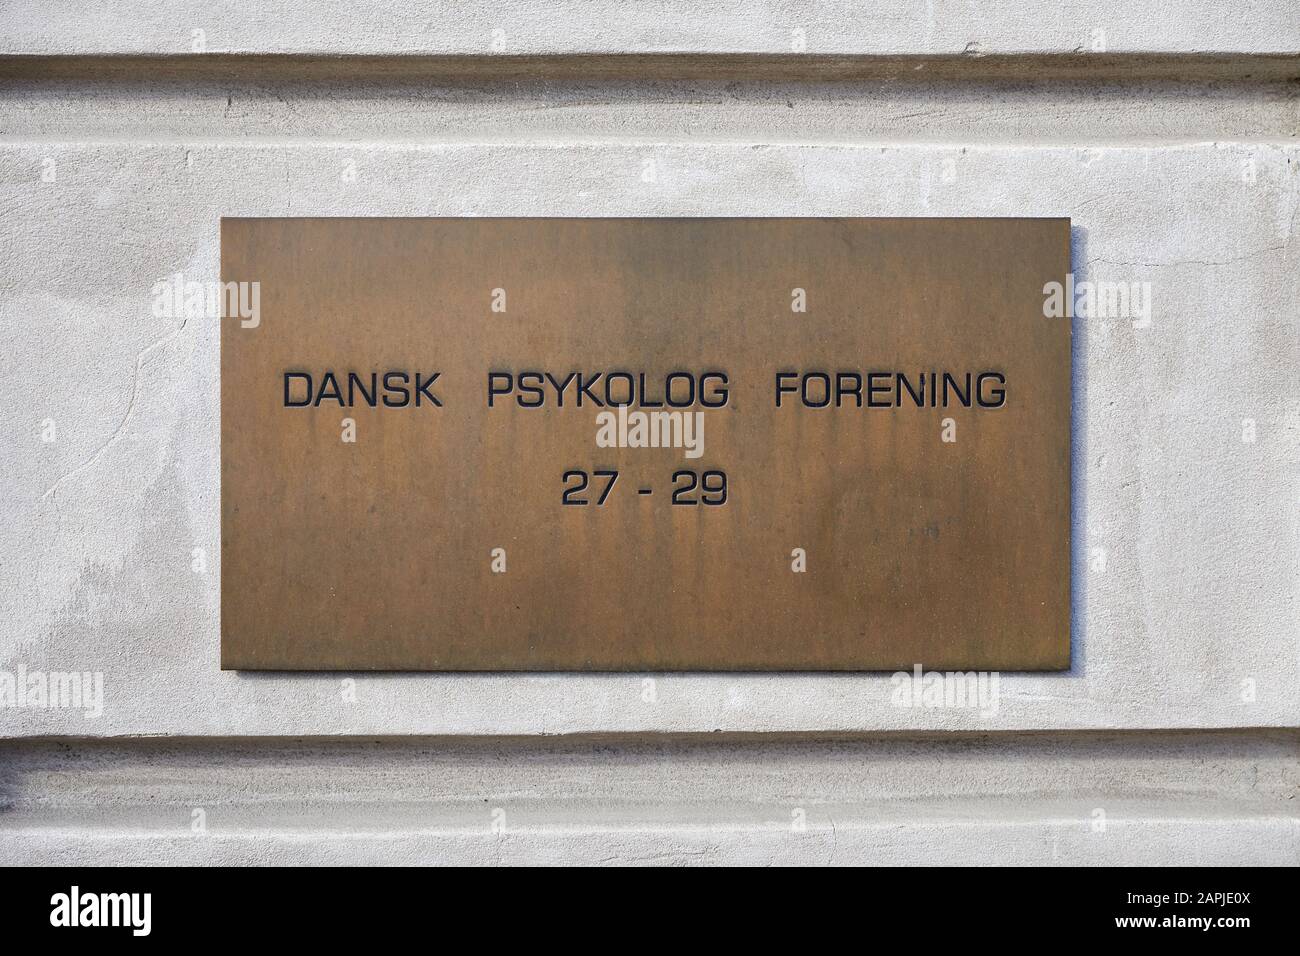 Dansk Psykolog Forening (the Danish Psychological Association), sign on building; Copenhagen, Denmark Stock Photo